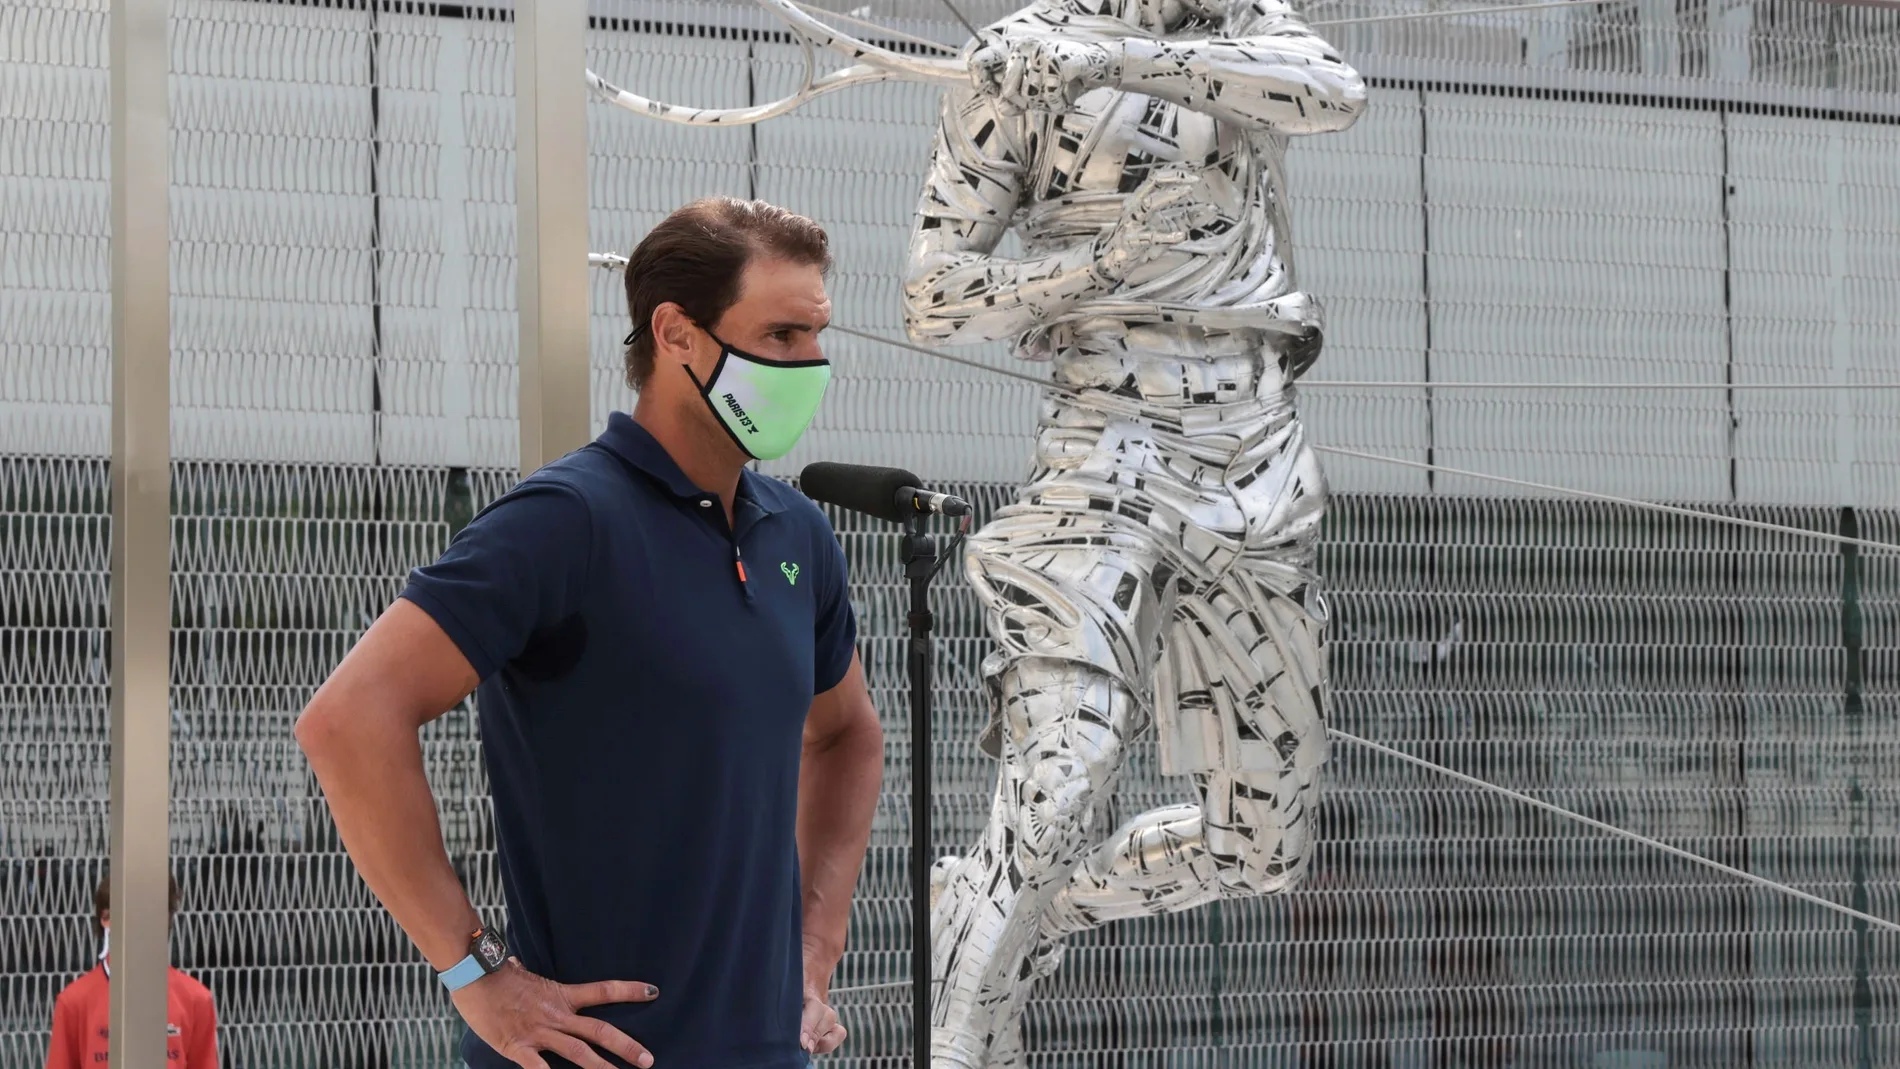 El tenista español Rafa Nadal asiste a la inauguración de una estatua esculpida en acero con su figura en Roland Garros, realizada por el artista español Jordi Díez, en París